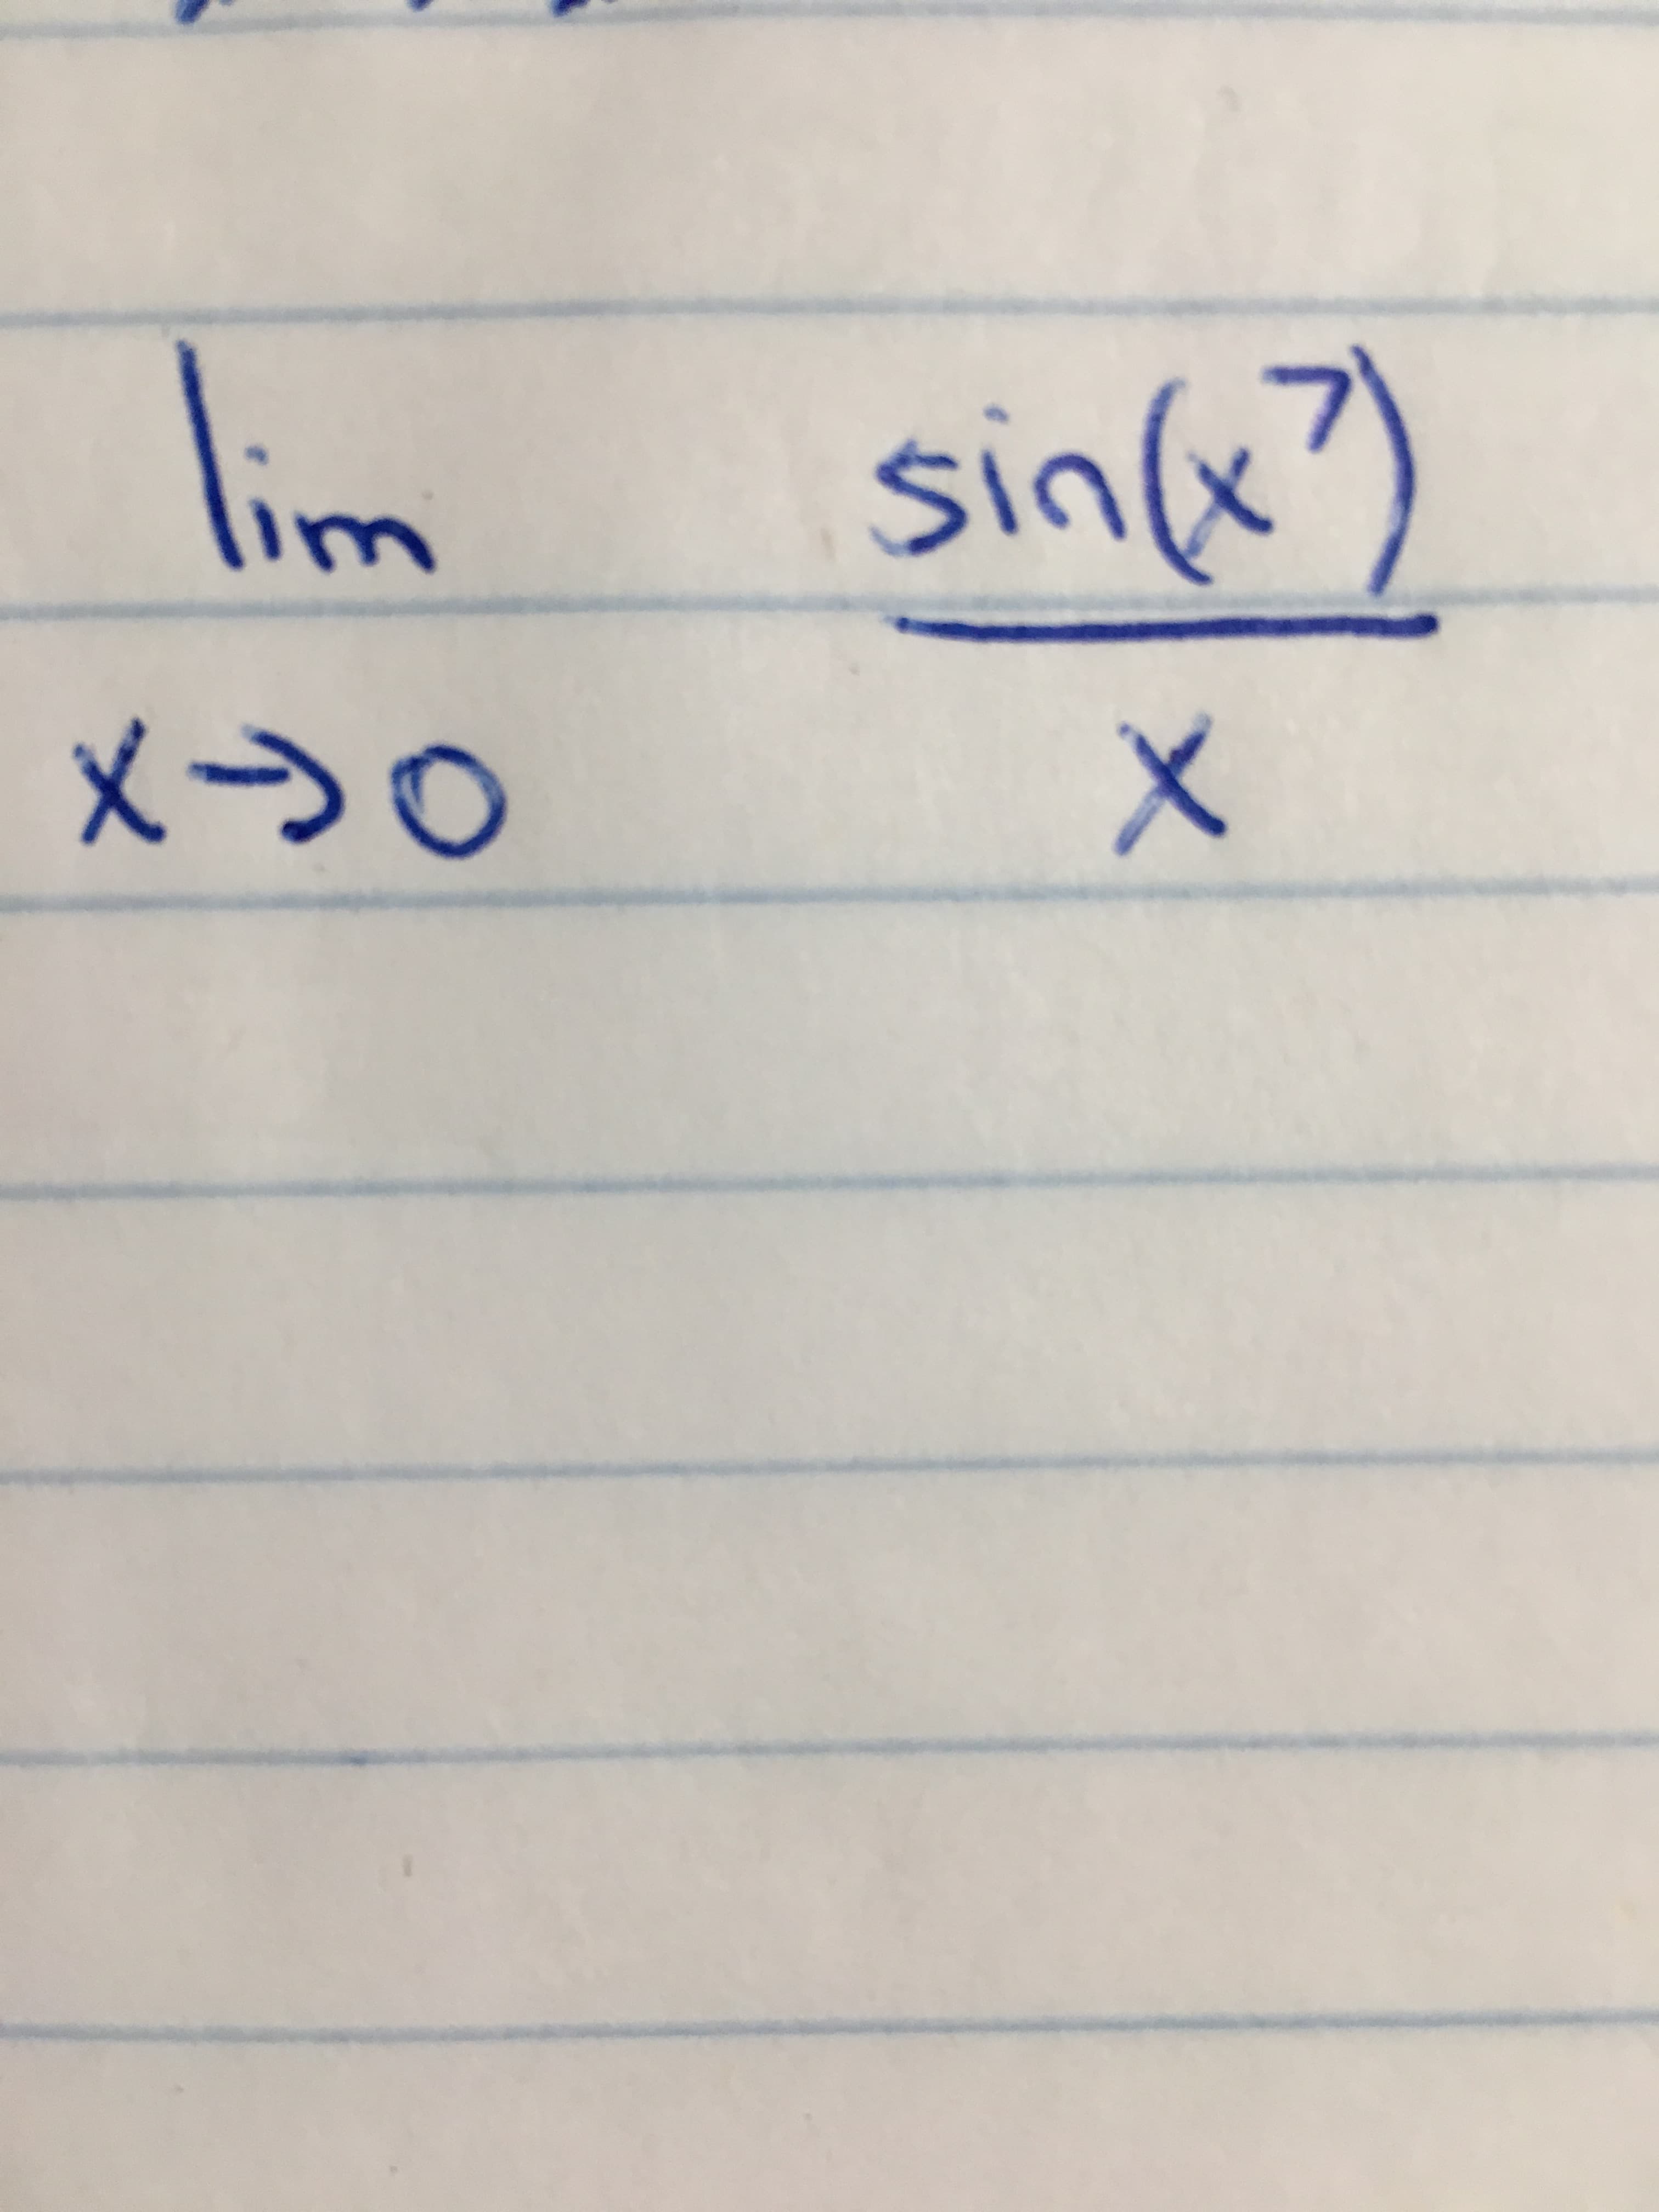 sink)
Sin(x
いr
メ→0
X
